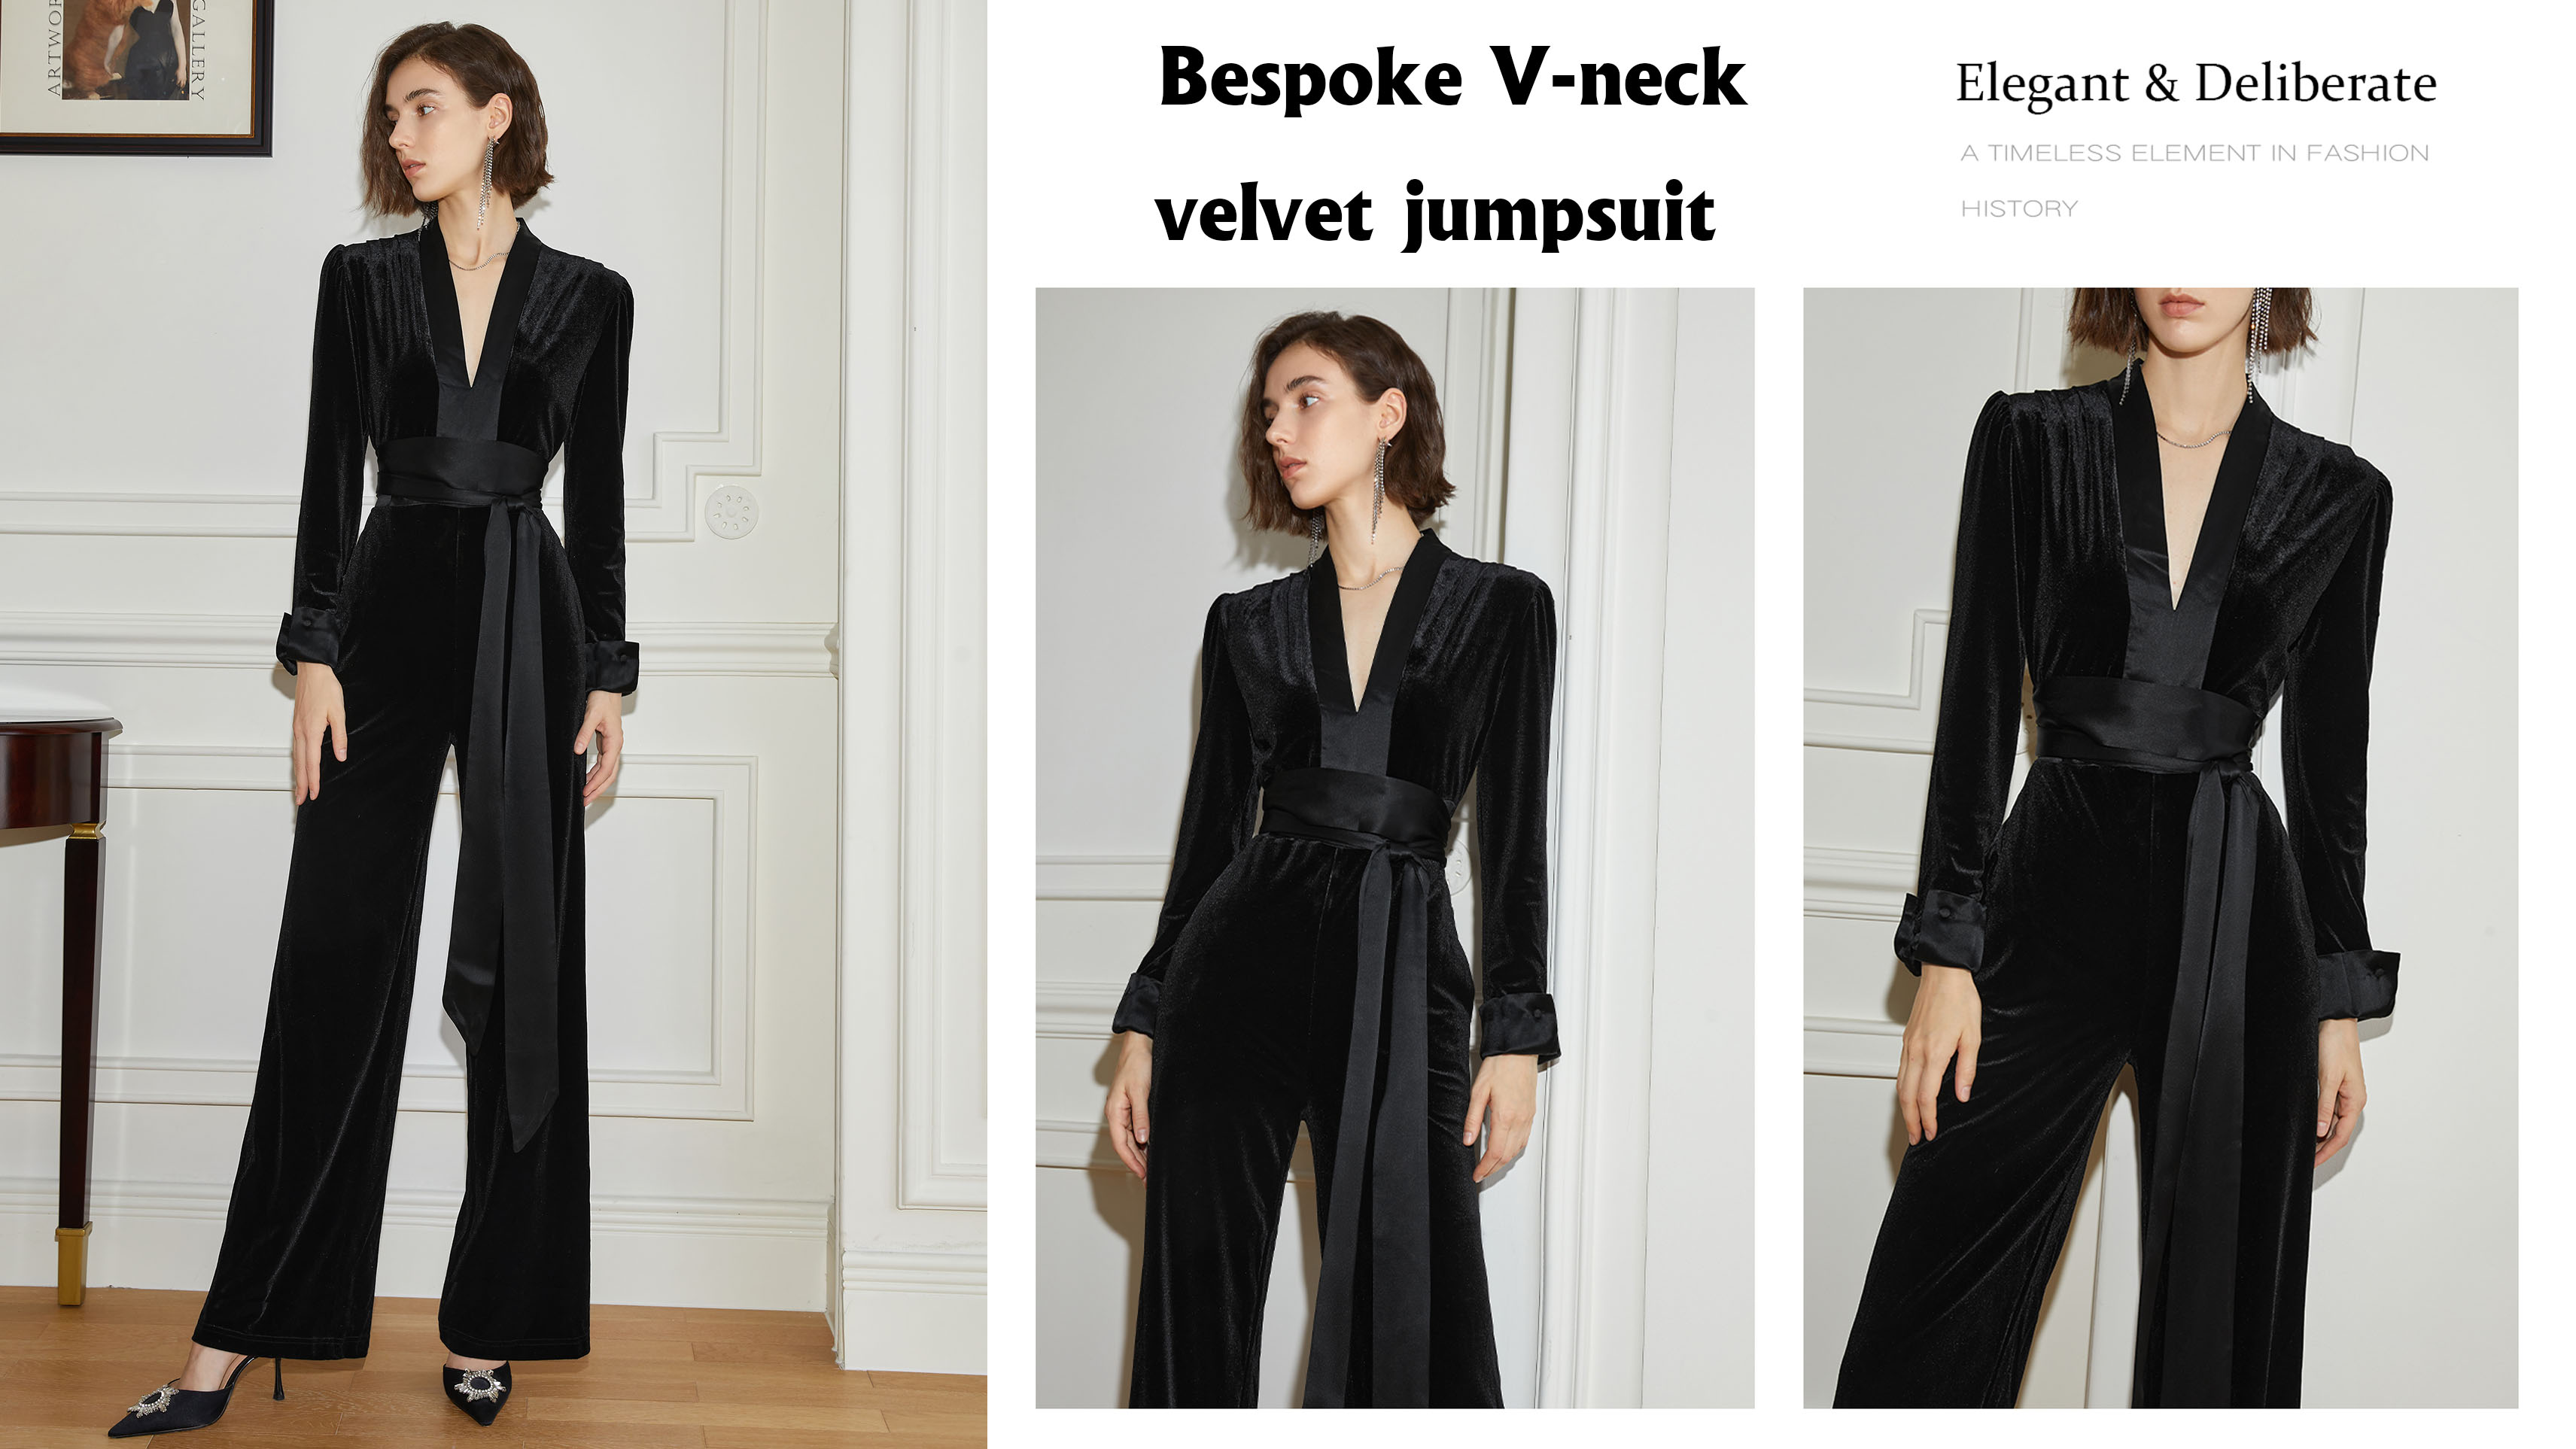 Bespoke V-neck velvet jumpsuit